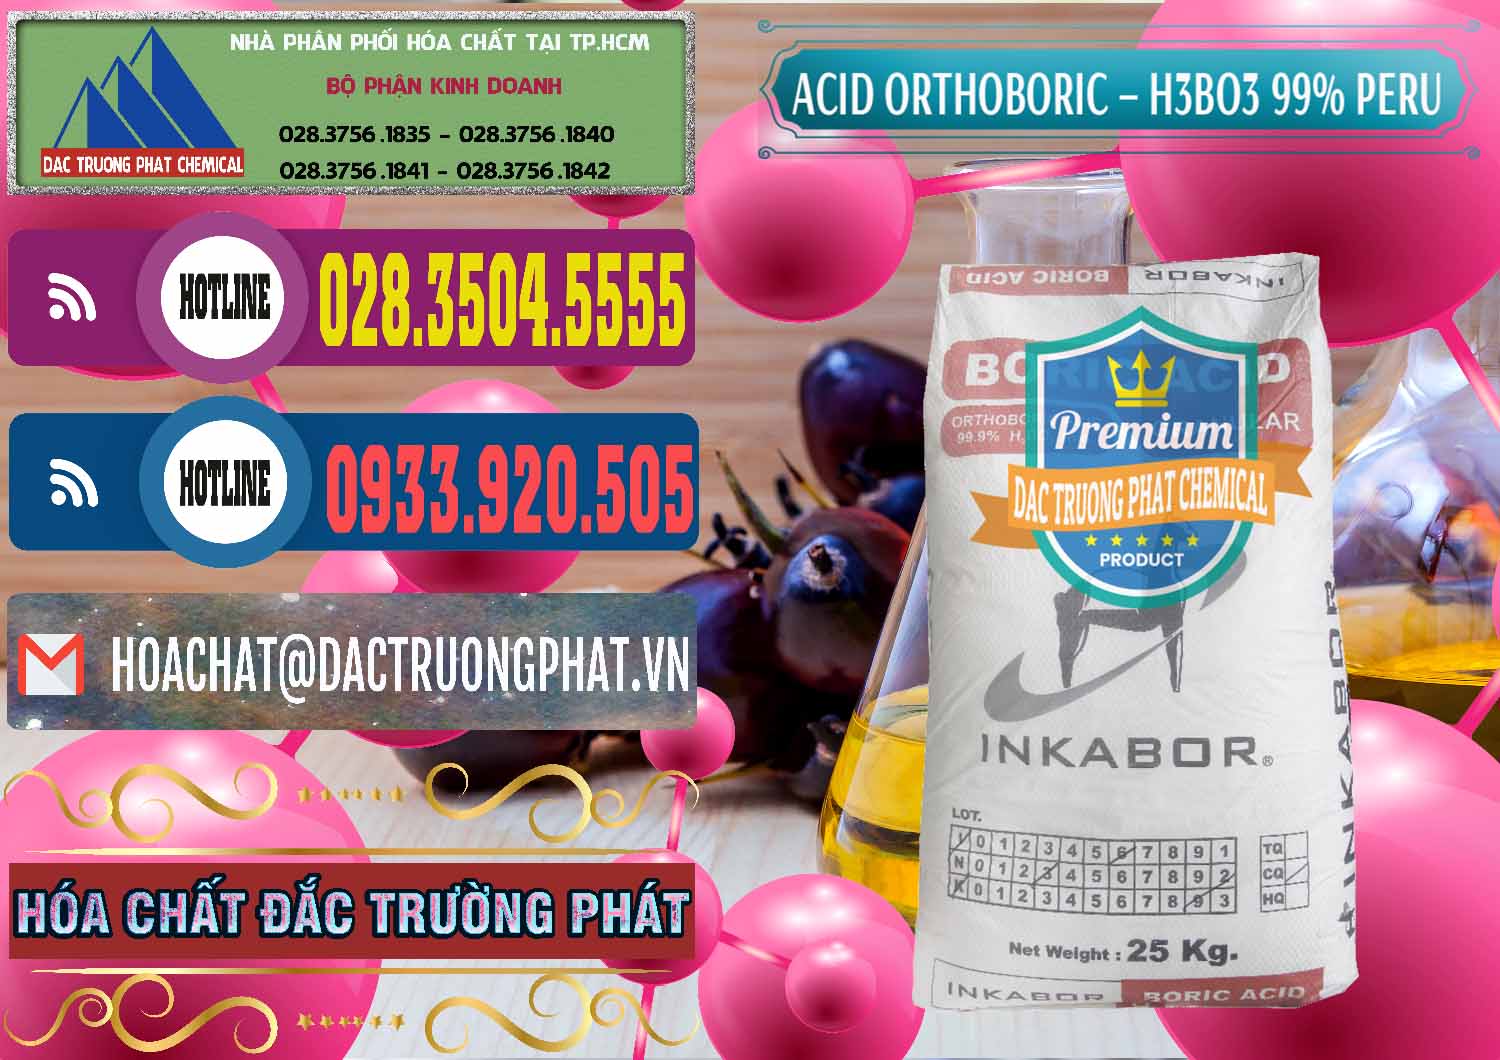 Cty bán và cung cấp Acid Boric – Axit Boric H3BO3 99% Inkabor Peru - 0280 - Công ty chuyên cung ứng & phân phối hóa chất tại TP.HCM - muabanhoachat.com.vn